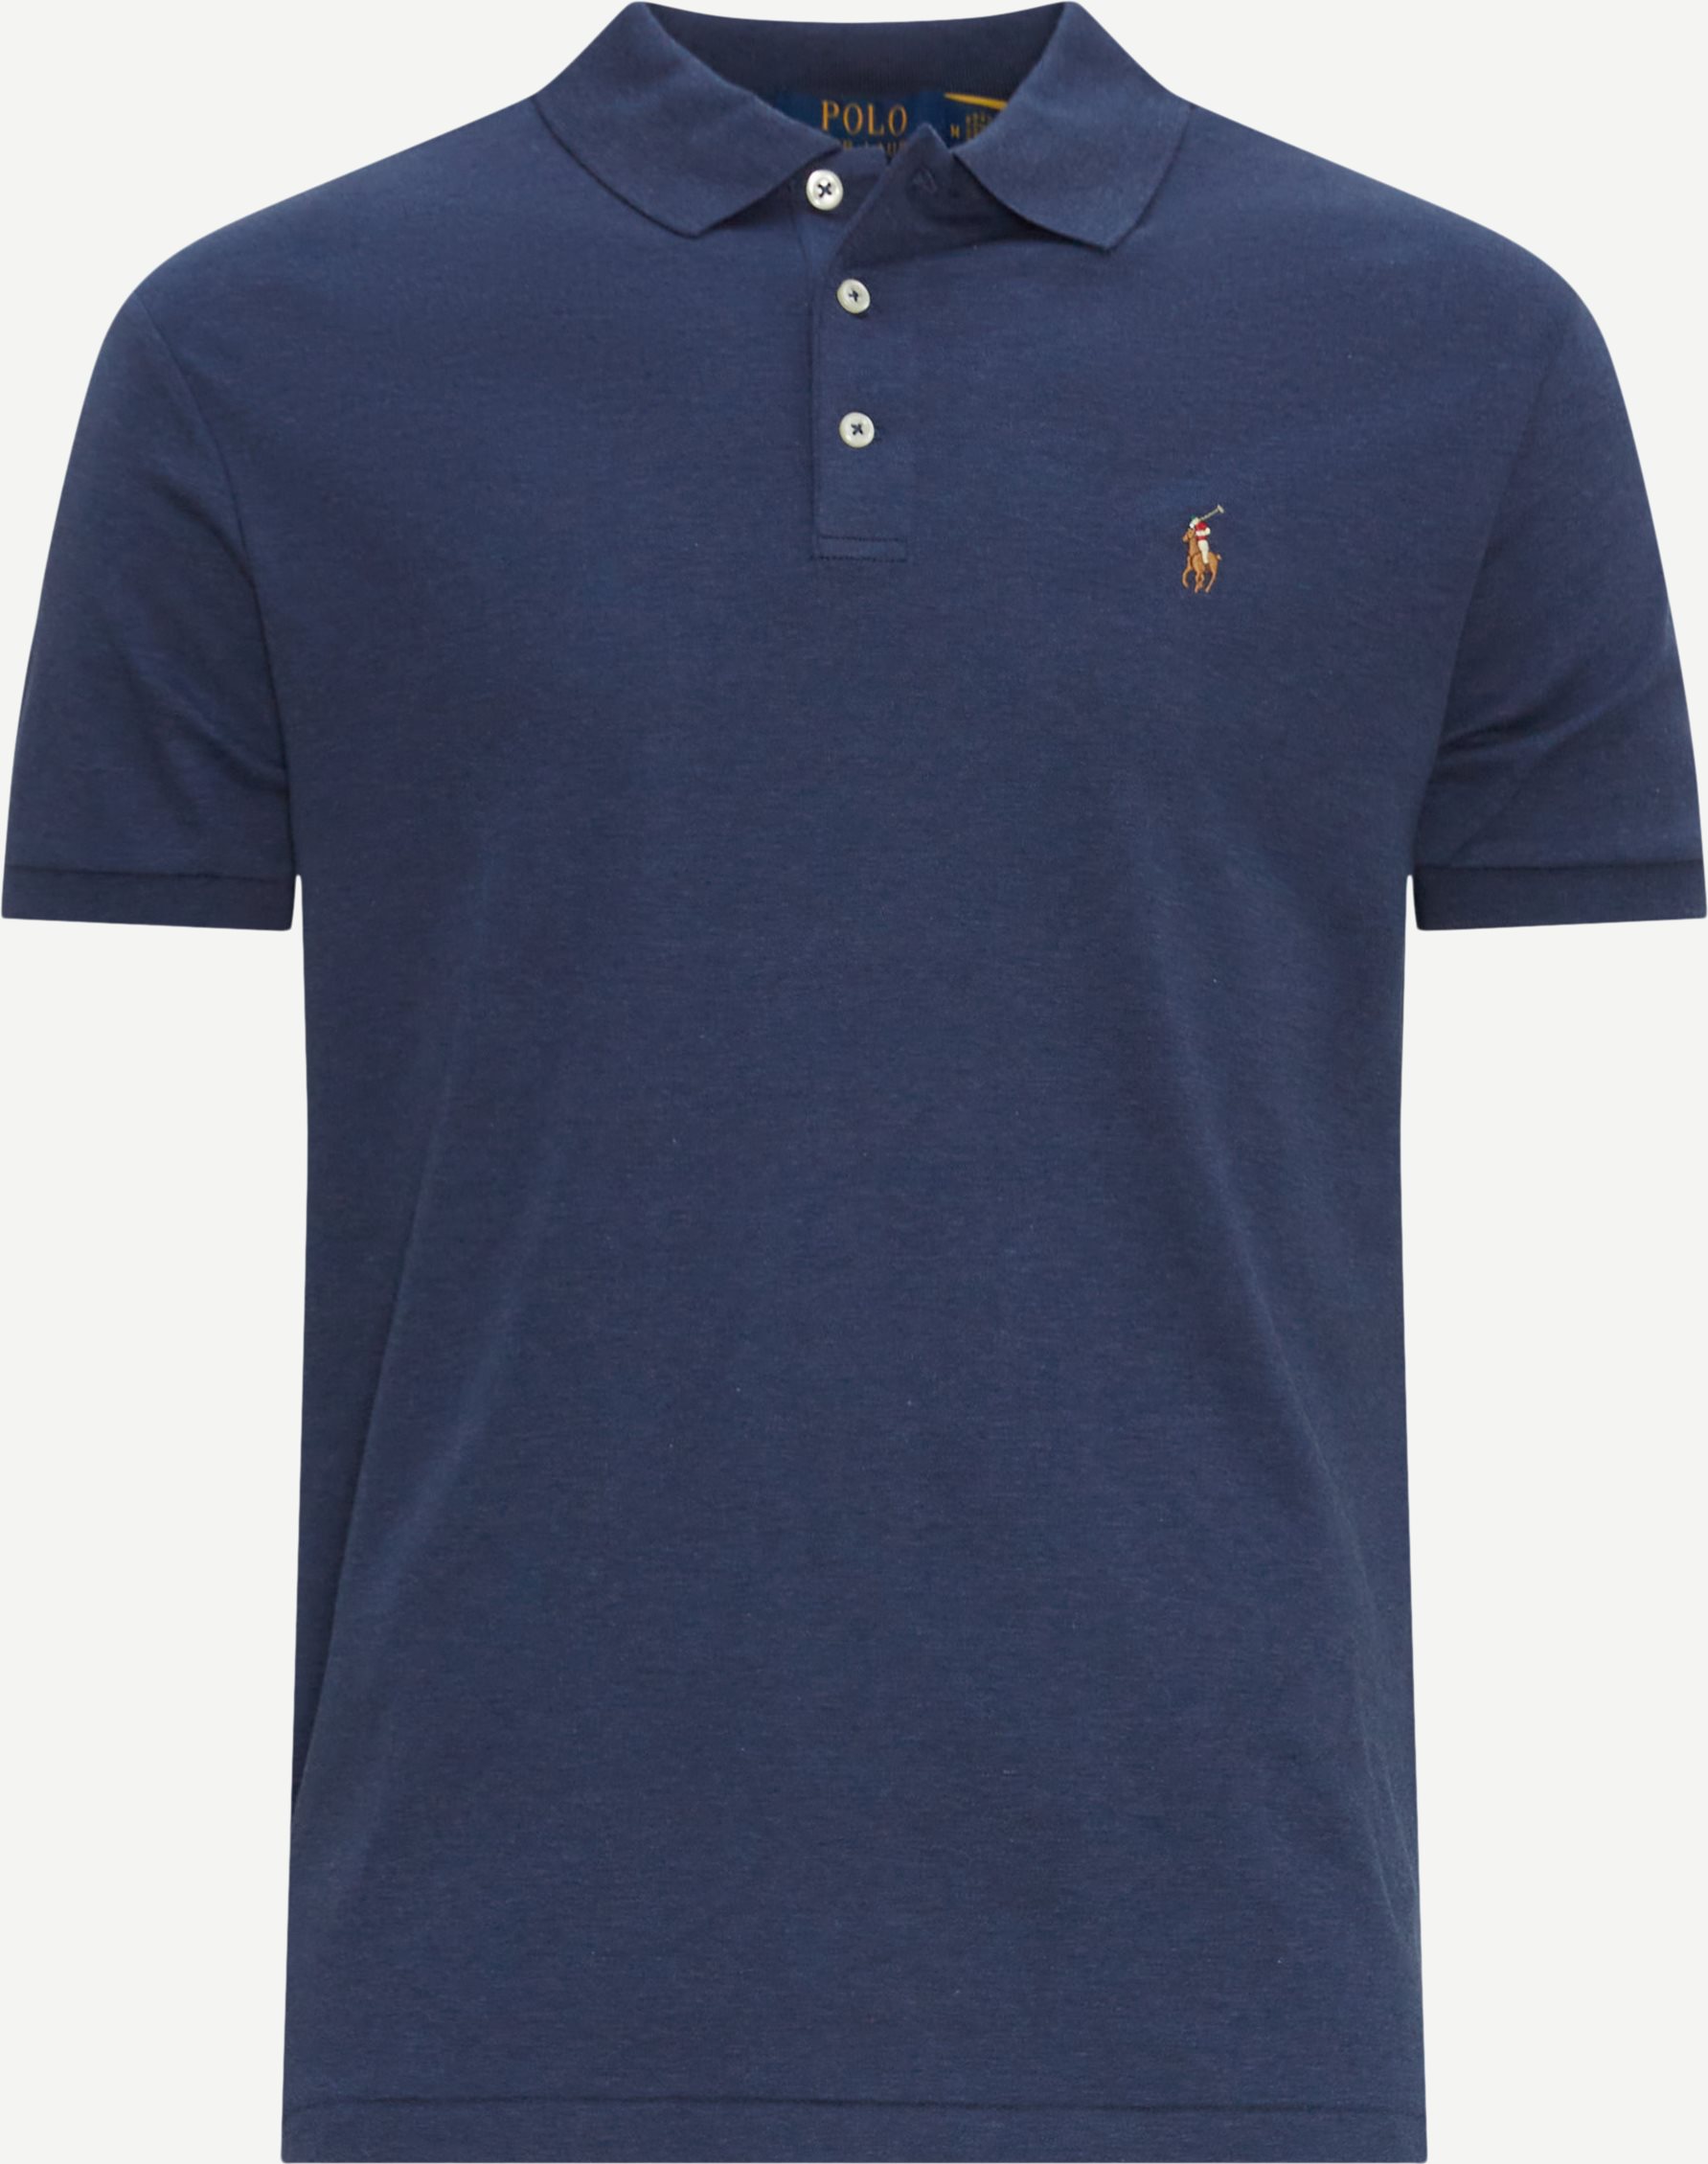 Polo Ralph Lauren T-shirts 710704319/710713130 Blue